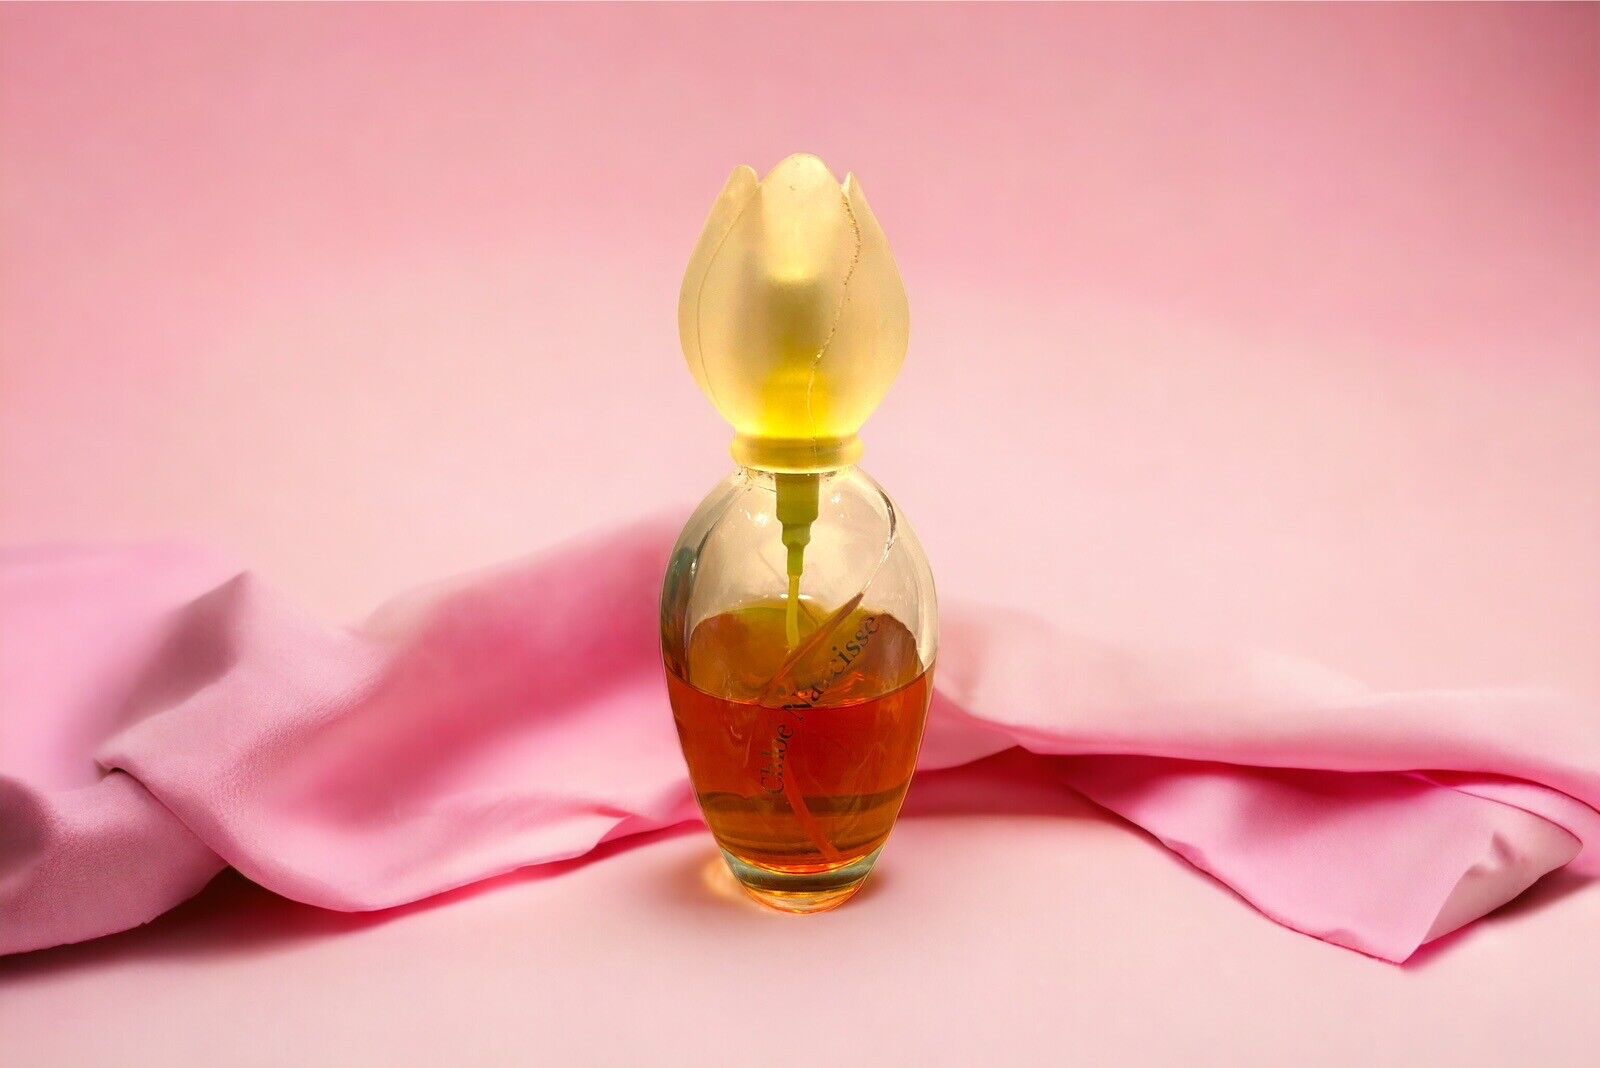 Vtg Chloe Narcisse 3.4 oz Eau de Toilette Perfume Discontinued (50 ml Remaining)